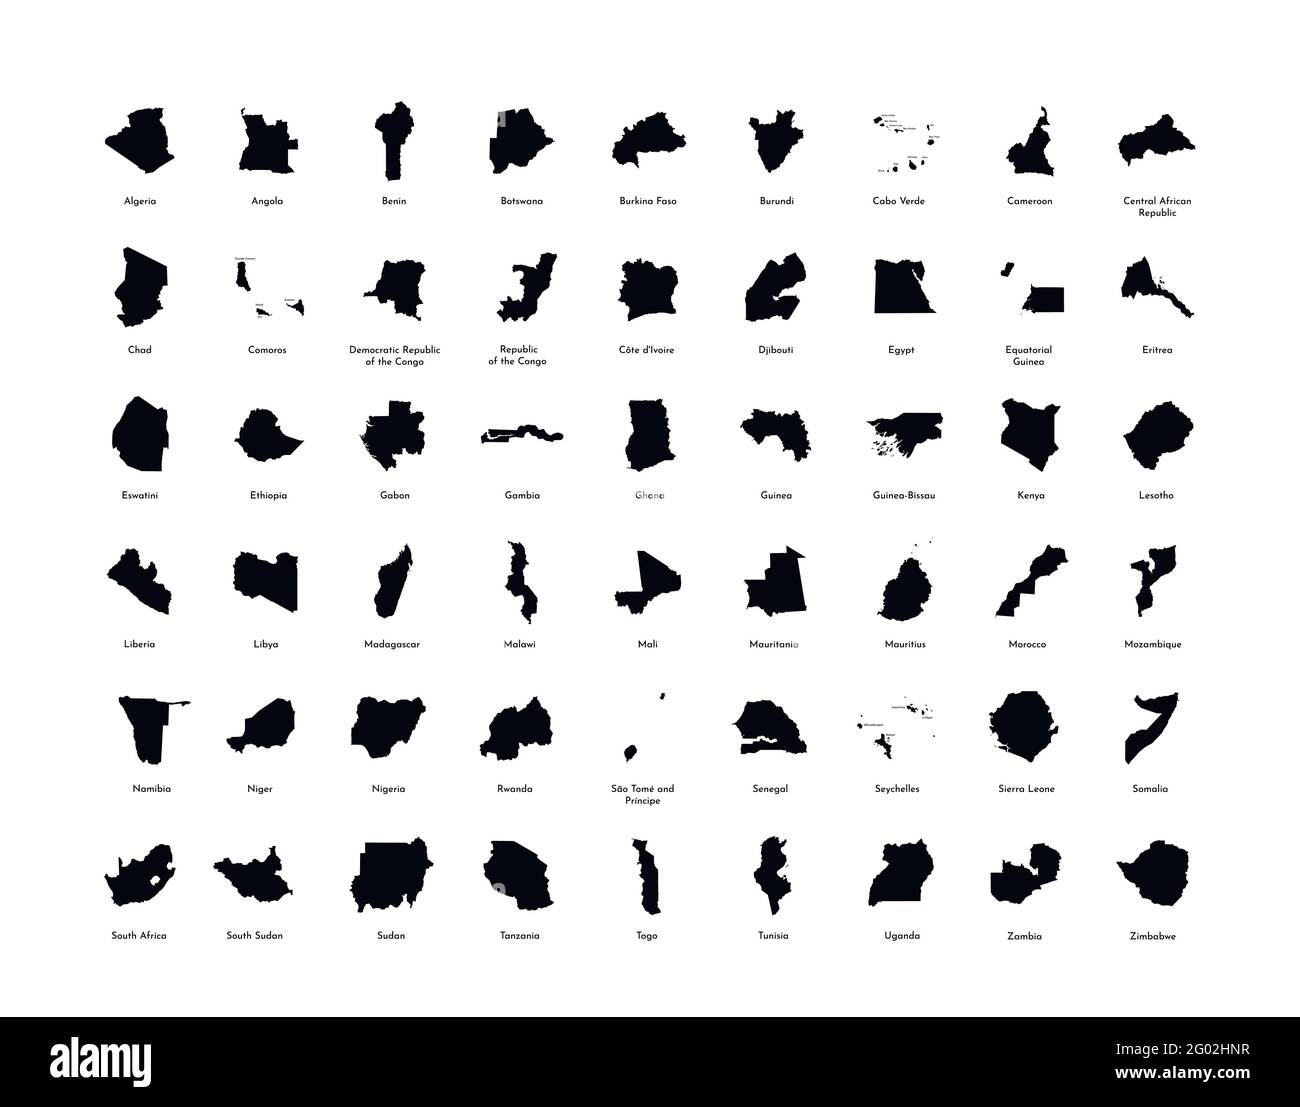 Vektorgrafik-Set mit vereinfachten Karten aller vollständig anerkannten afrikanischen Staaten. Schwarze Silhouetten, weißer Hintergrund. Stock Vektor